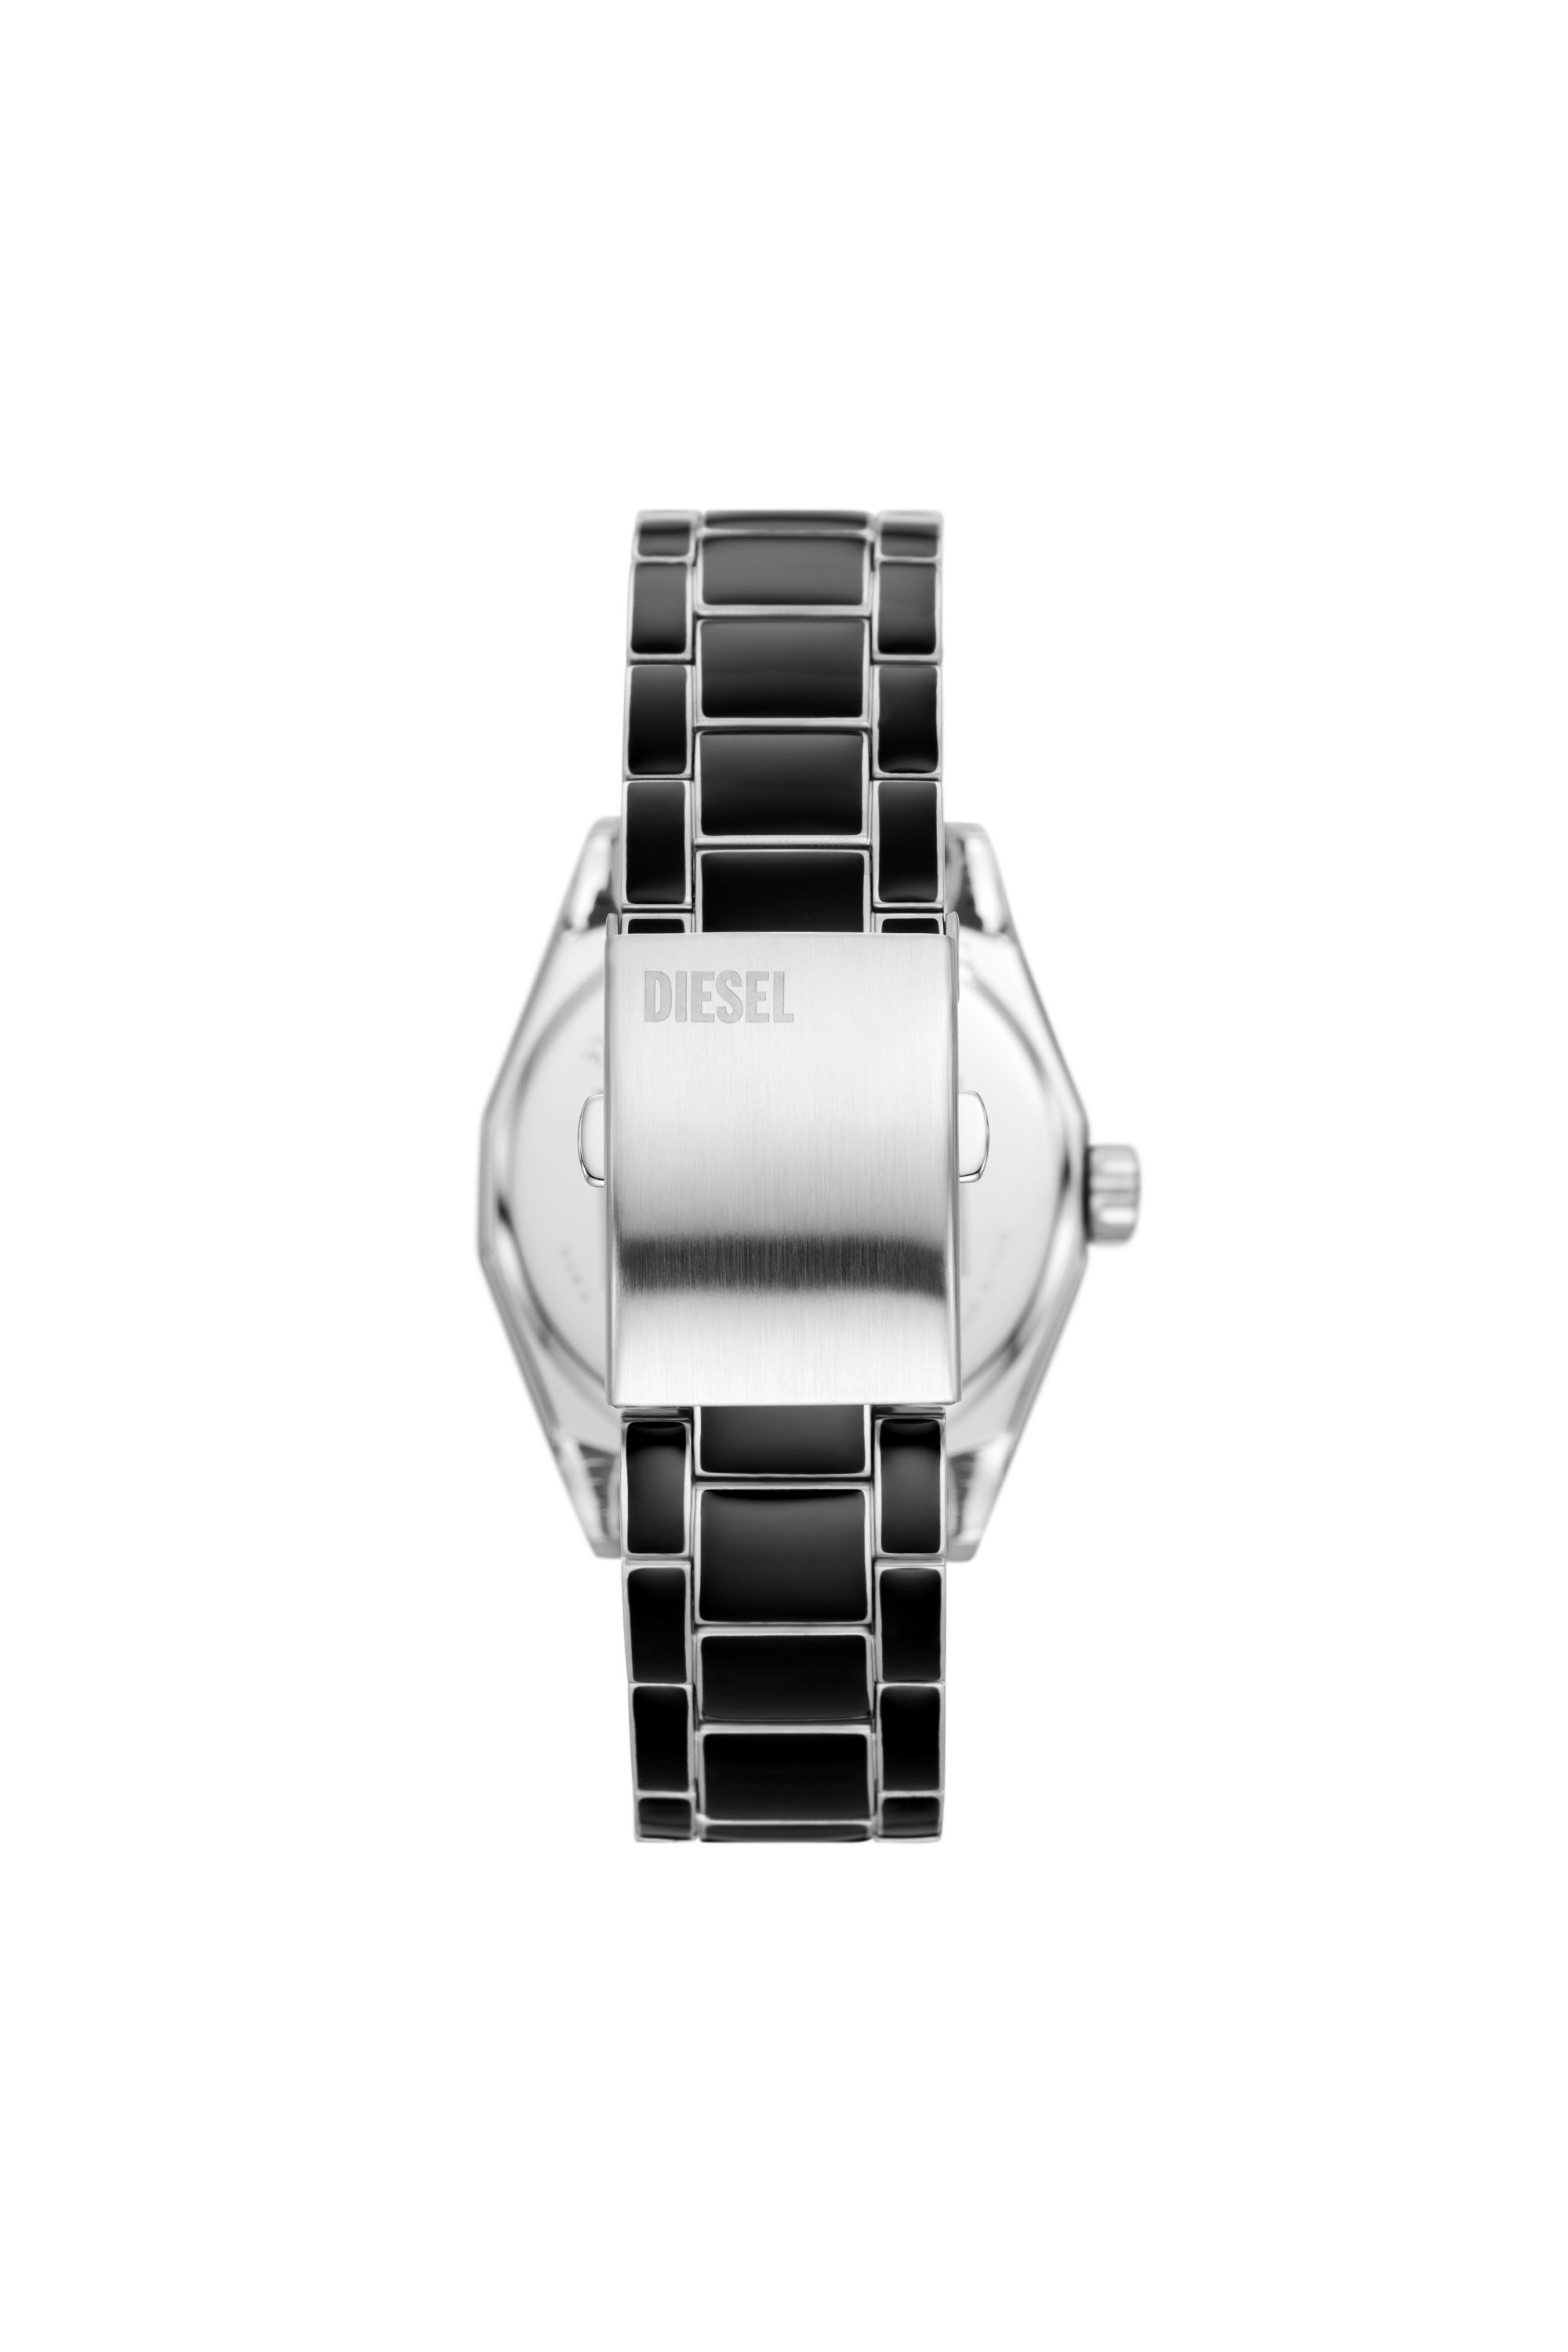 Diesel - DZ2195, Man Scraper black enamel and stainless steel watch in Black - Image 2